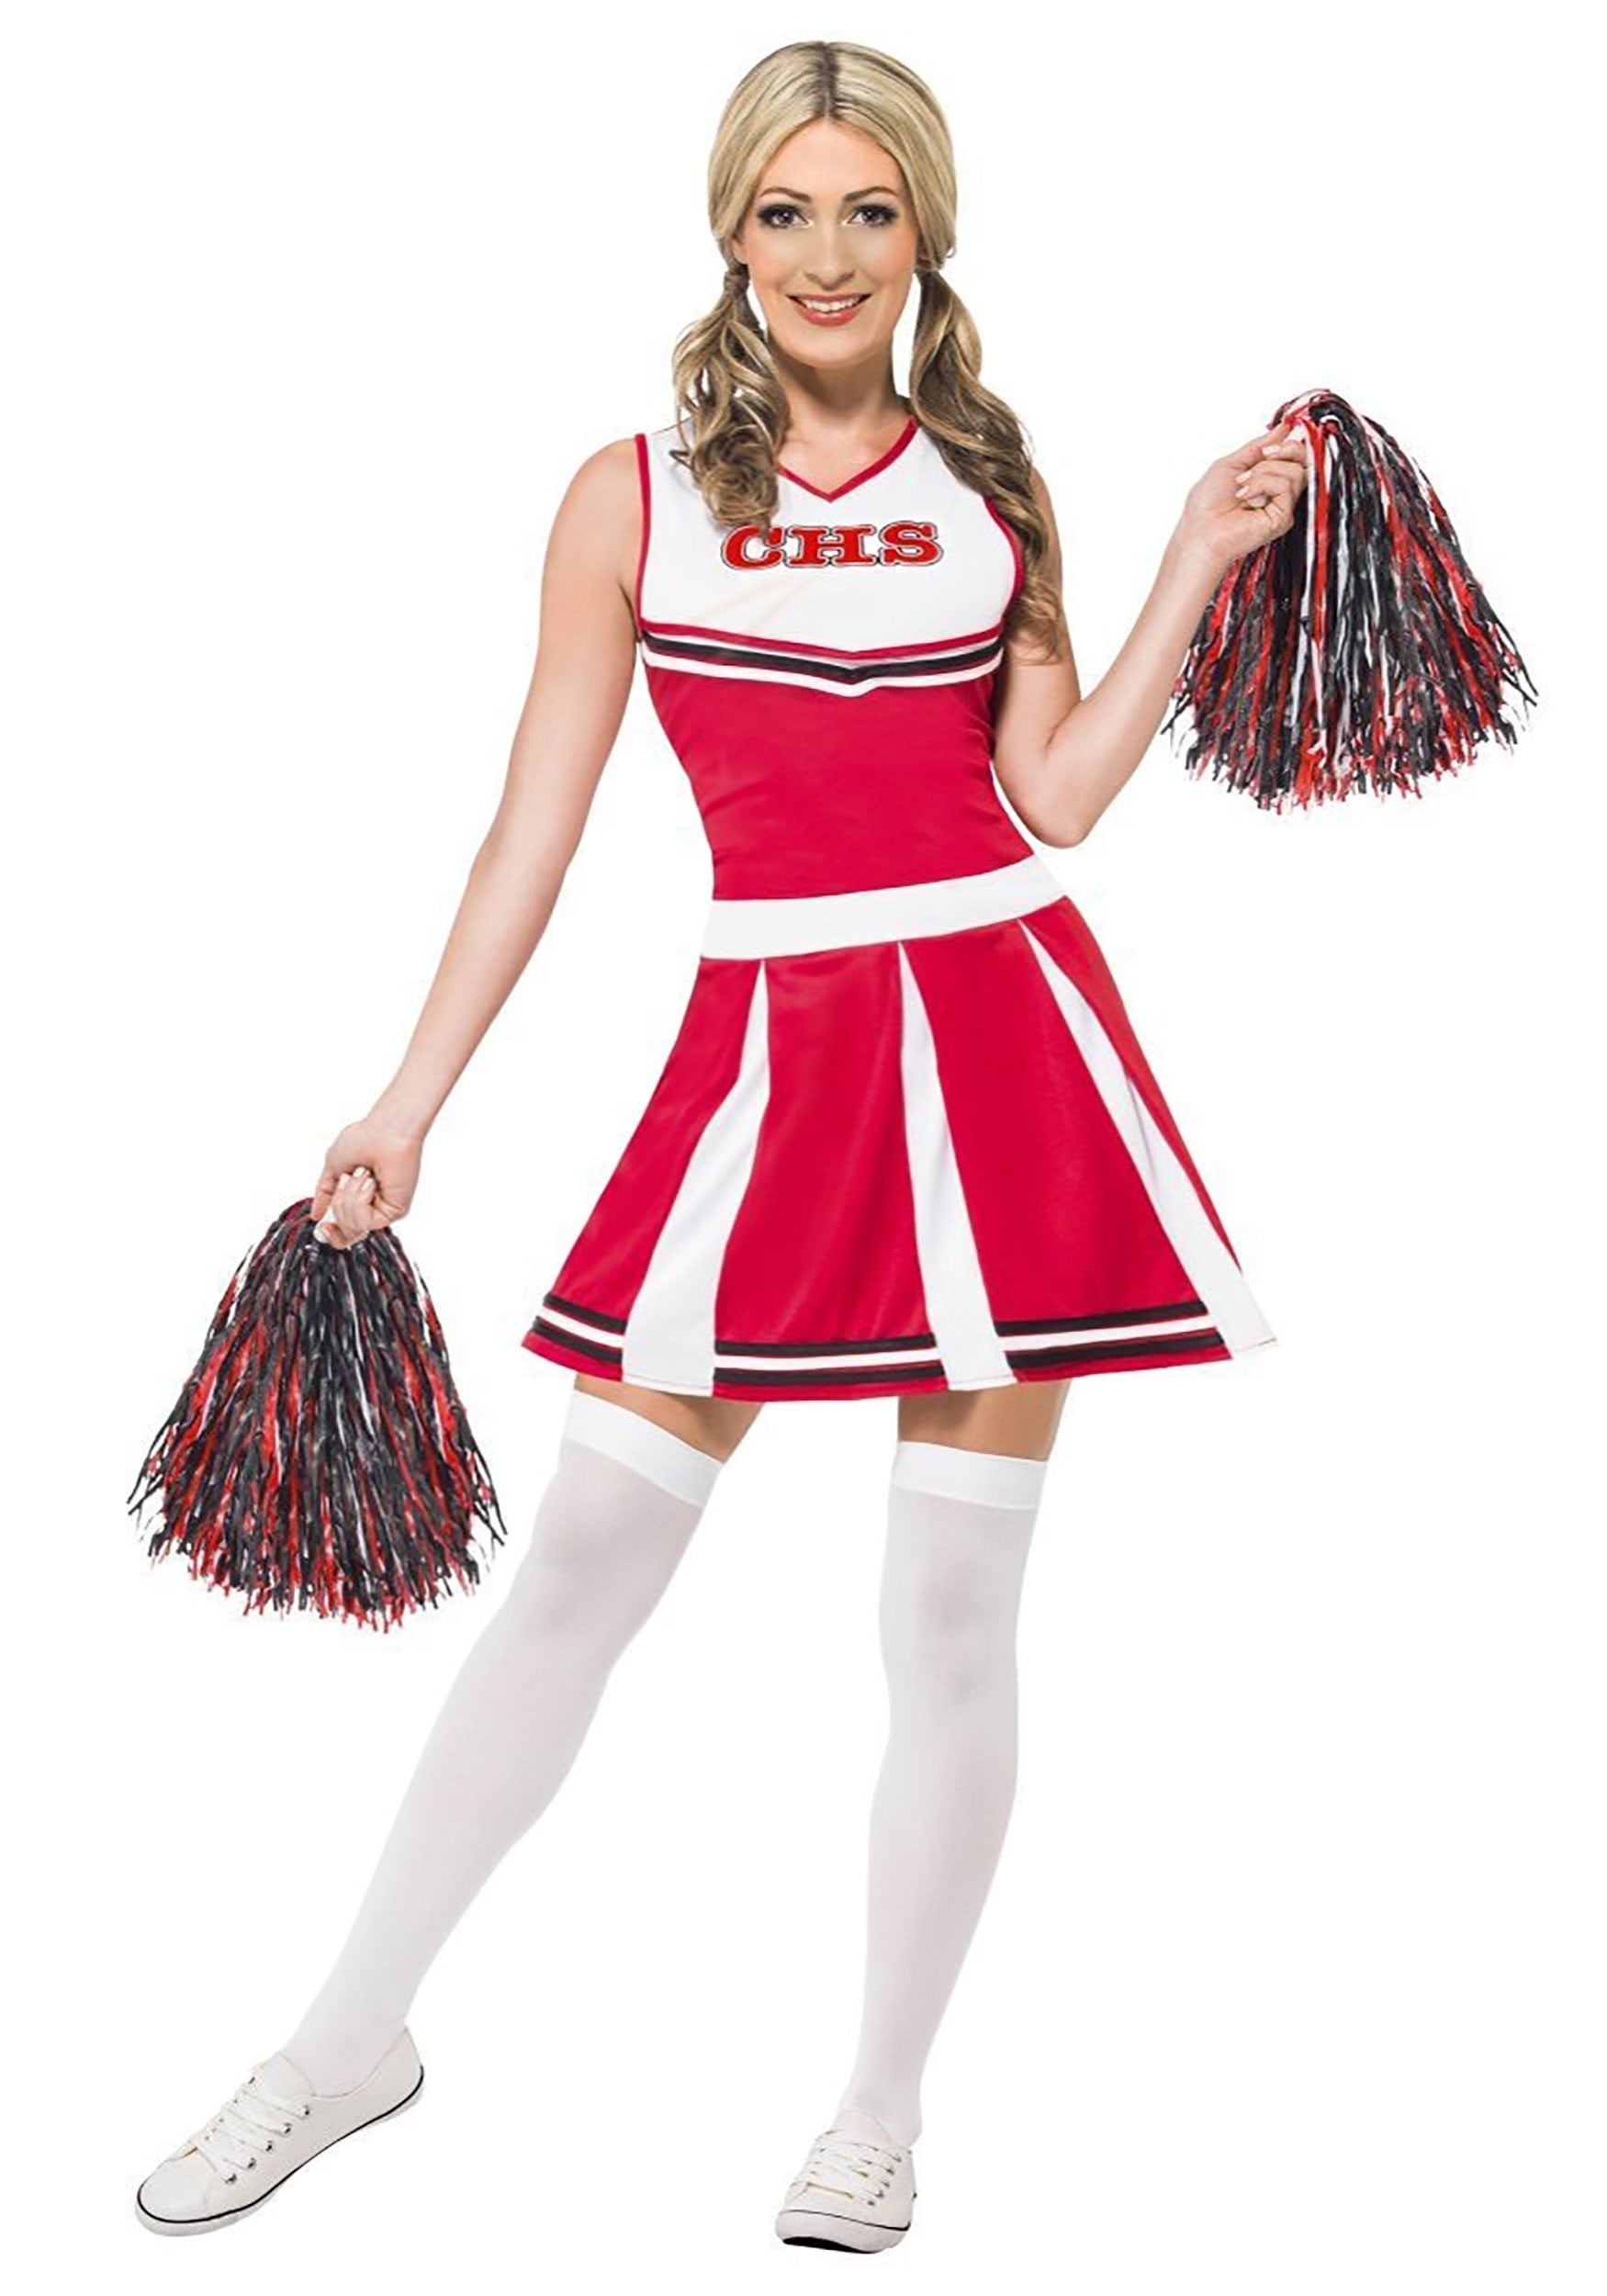 Club Top Skirt Cheerleader School Cheer Halloween Costume Adult Women Glee 